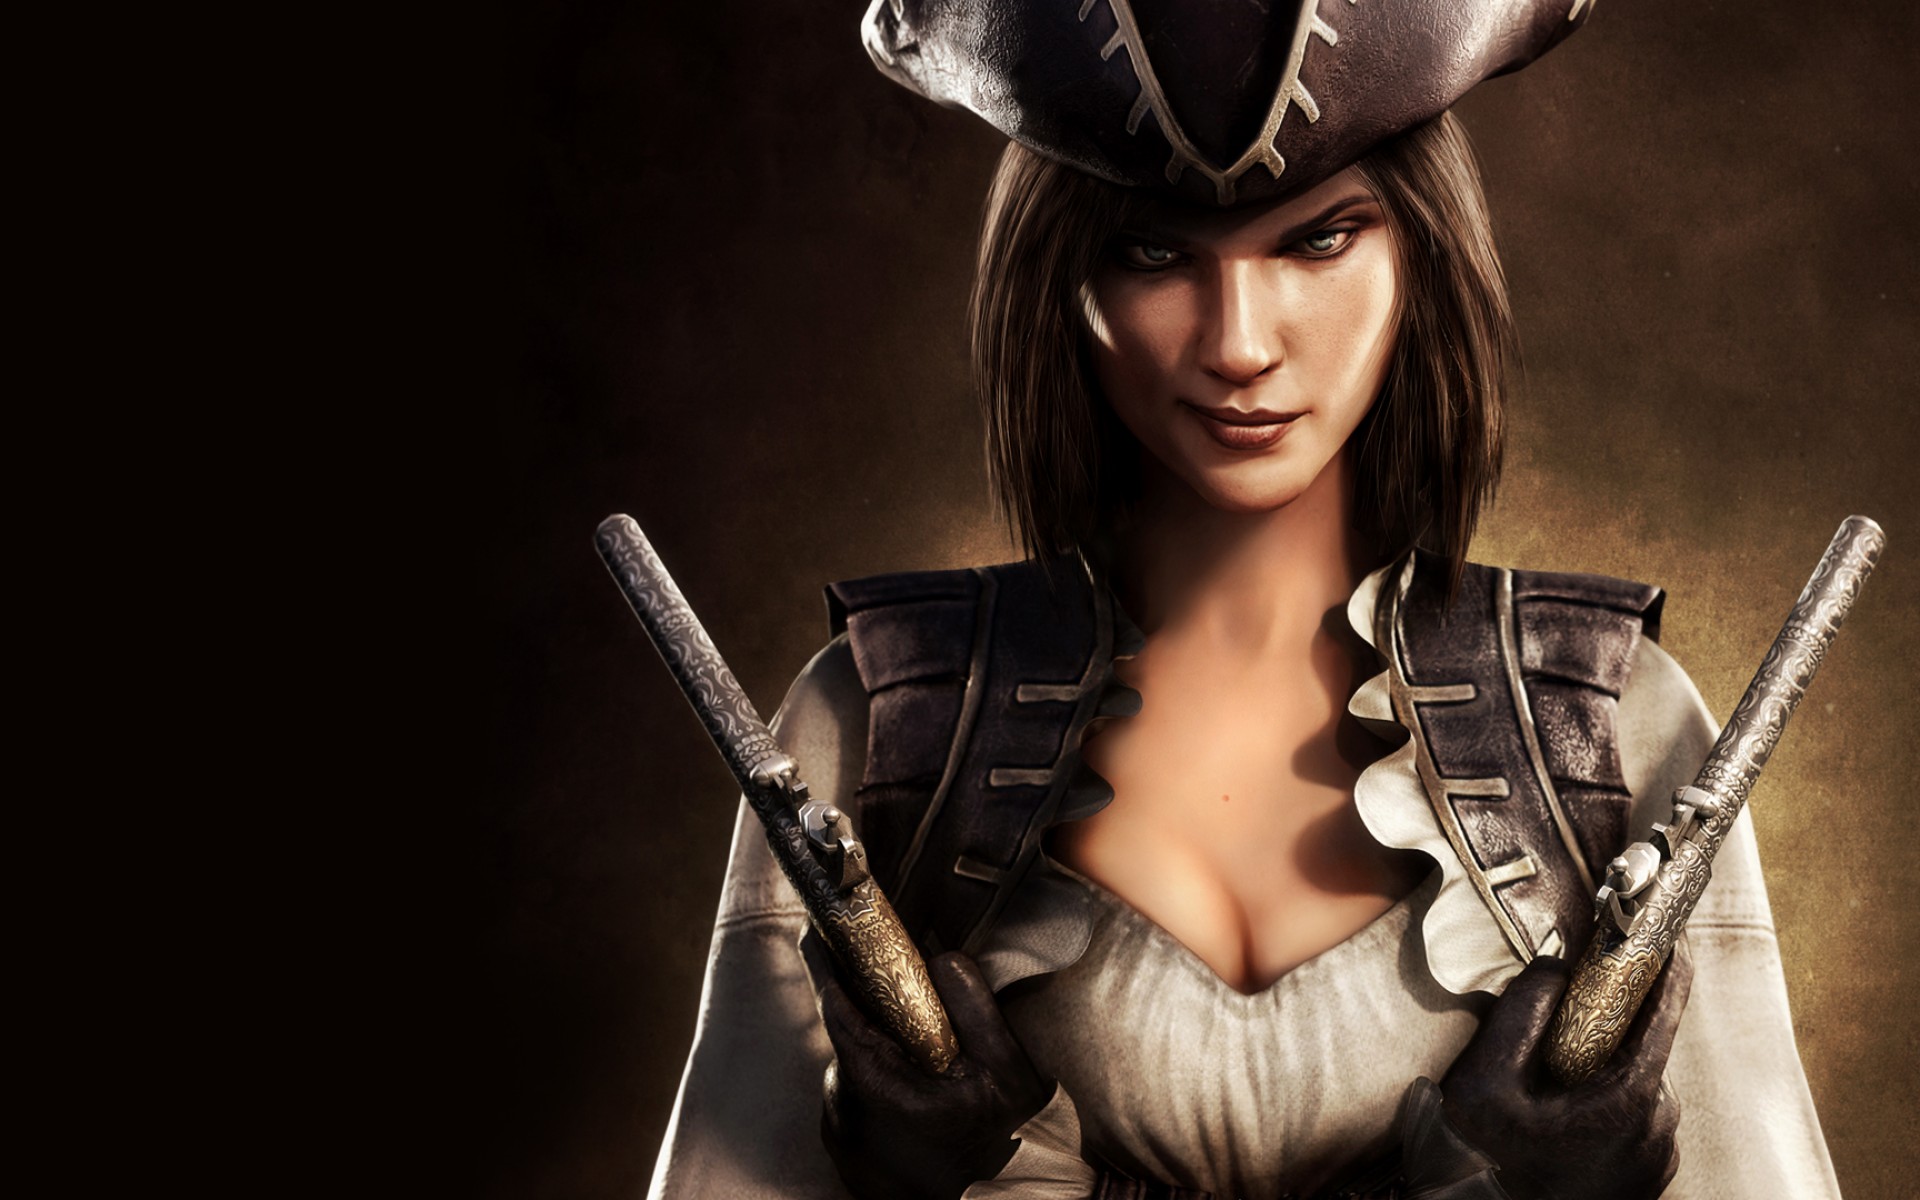 Descarga gratuita de fondo de pantalla para móvil de Assassin's Creed Iv: Black Flag, Credo Del Asesino, Assassin's Creed, Videojuego.